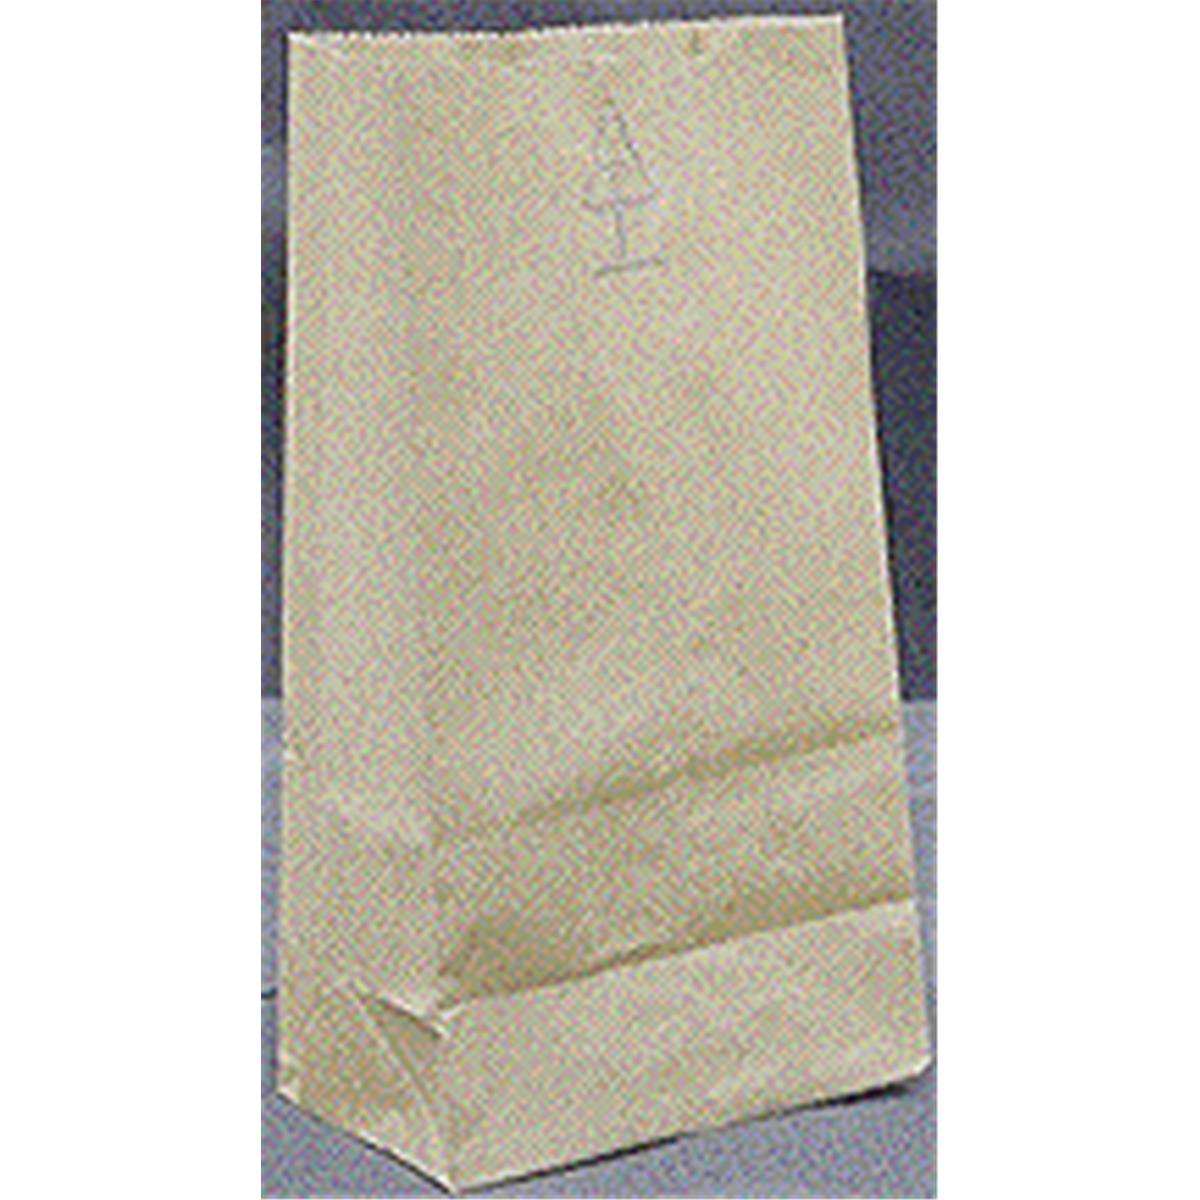 5 Lbs Grocery Bags, Brown Kraft Paper - Pack Of 500